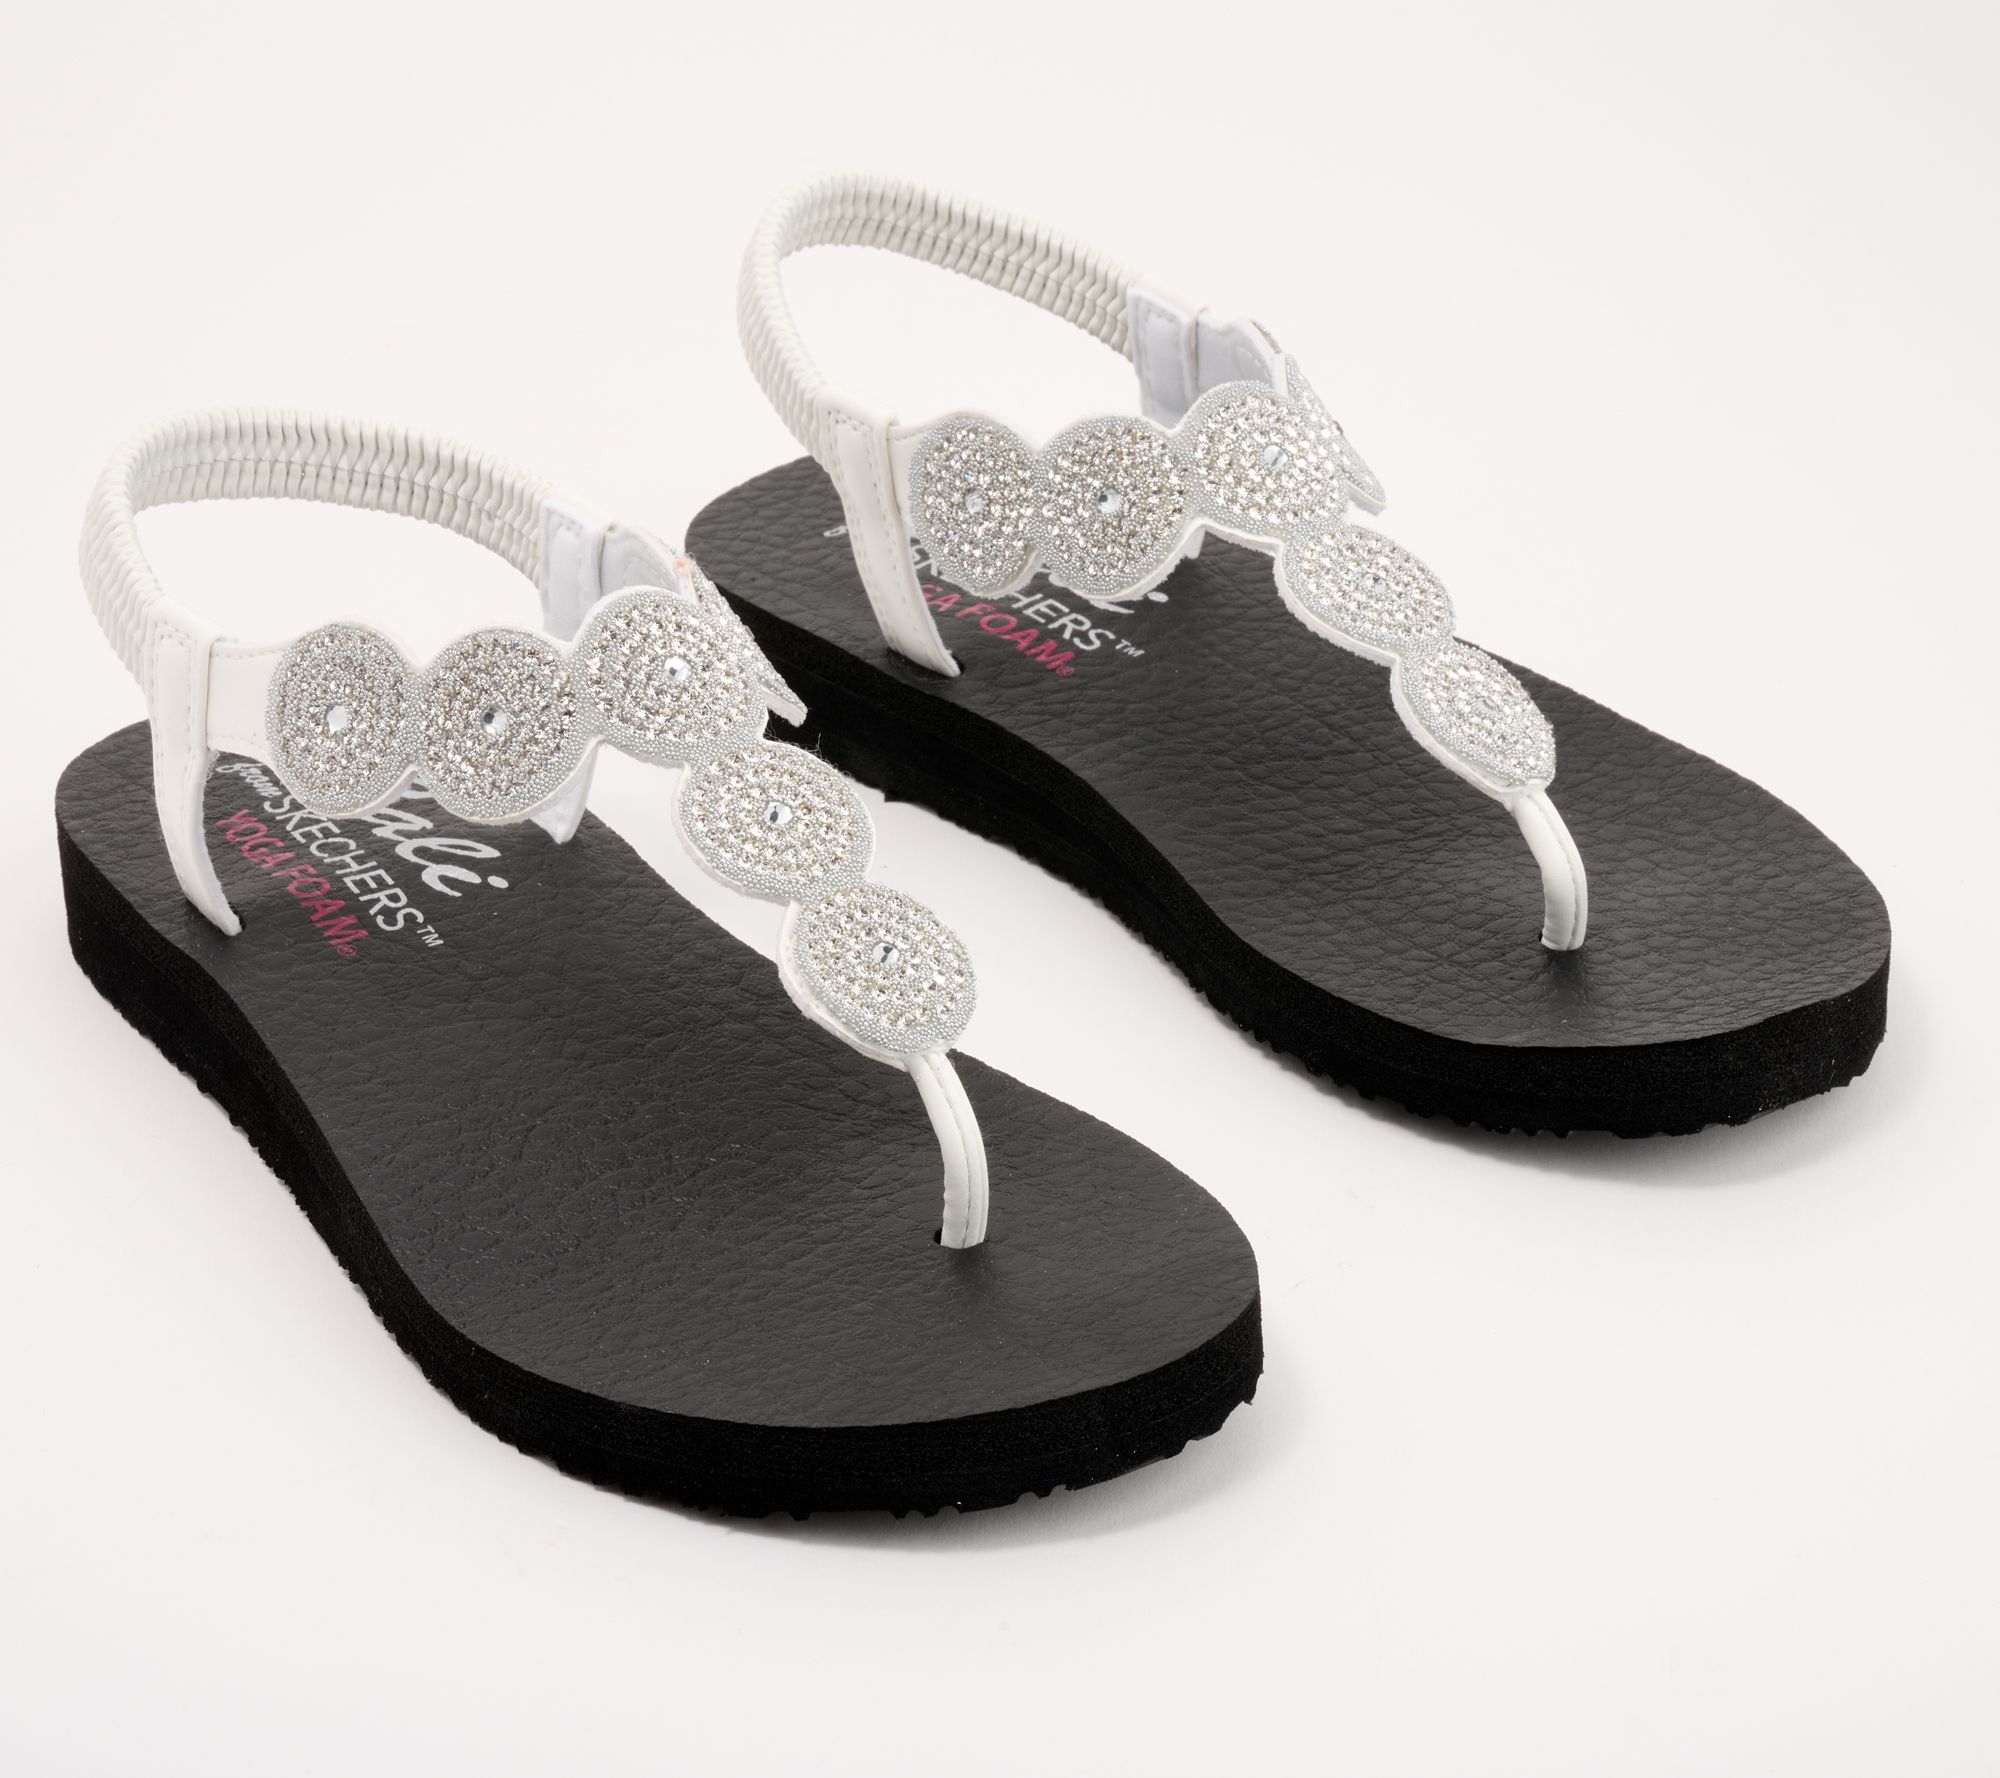 SKECHERS Yoga Foam Womens Size 7 Black Sparkle Thong Flip Flop Sandals 